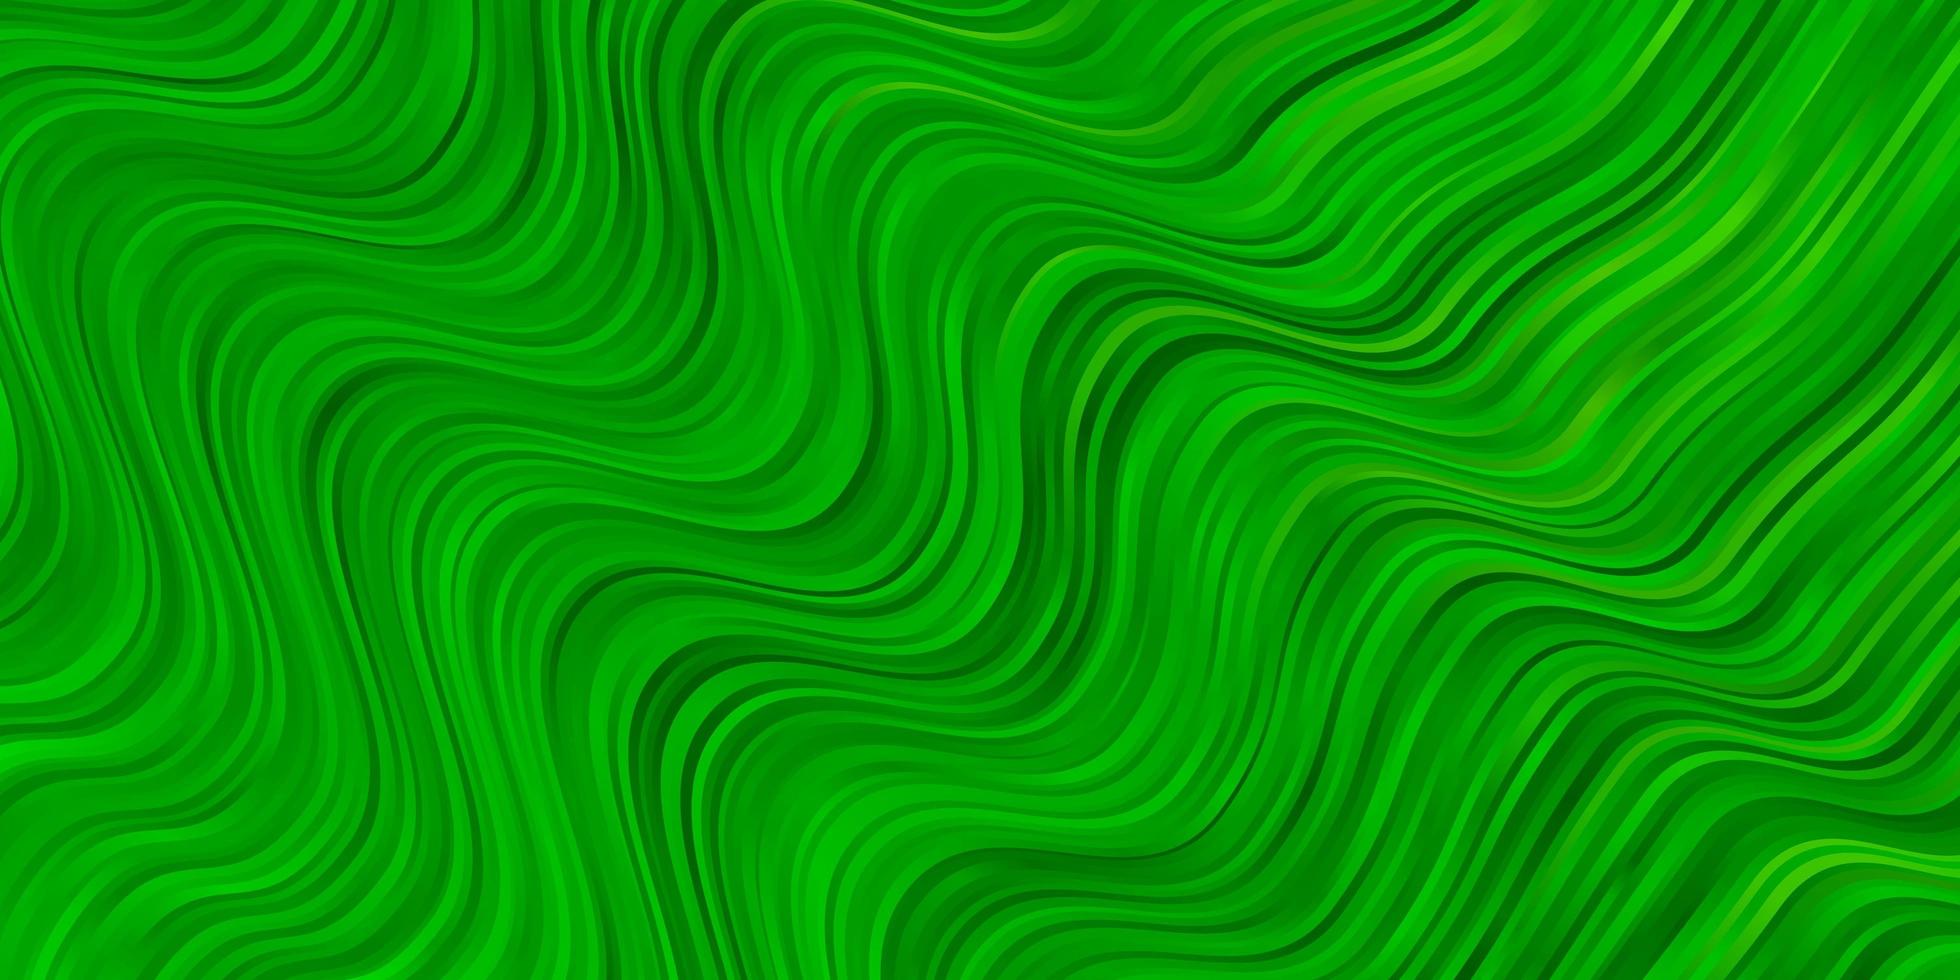 sfondo vettoriale giallo verde chiaro con curve campione luminoso con linee colorate piegate forme design intelligente per le tue promozioni